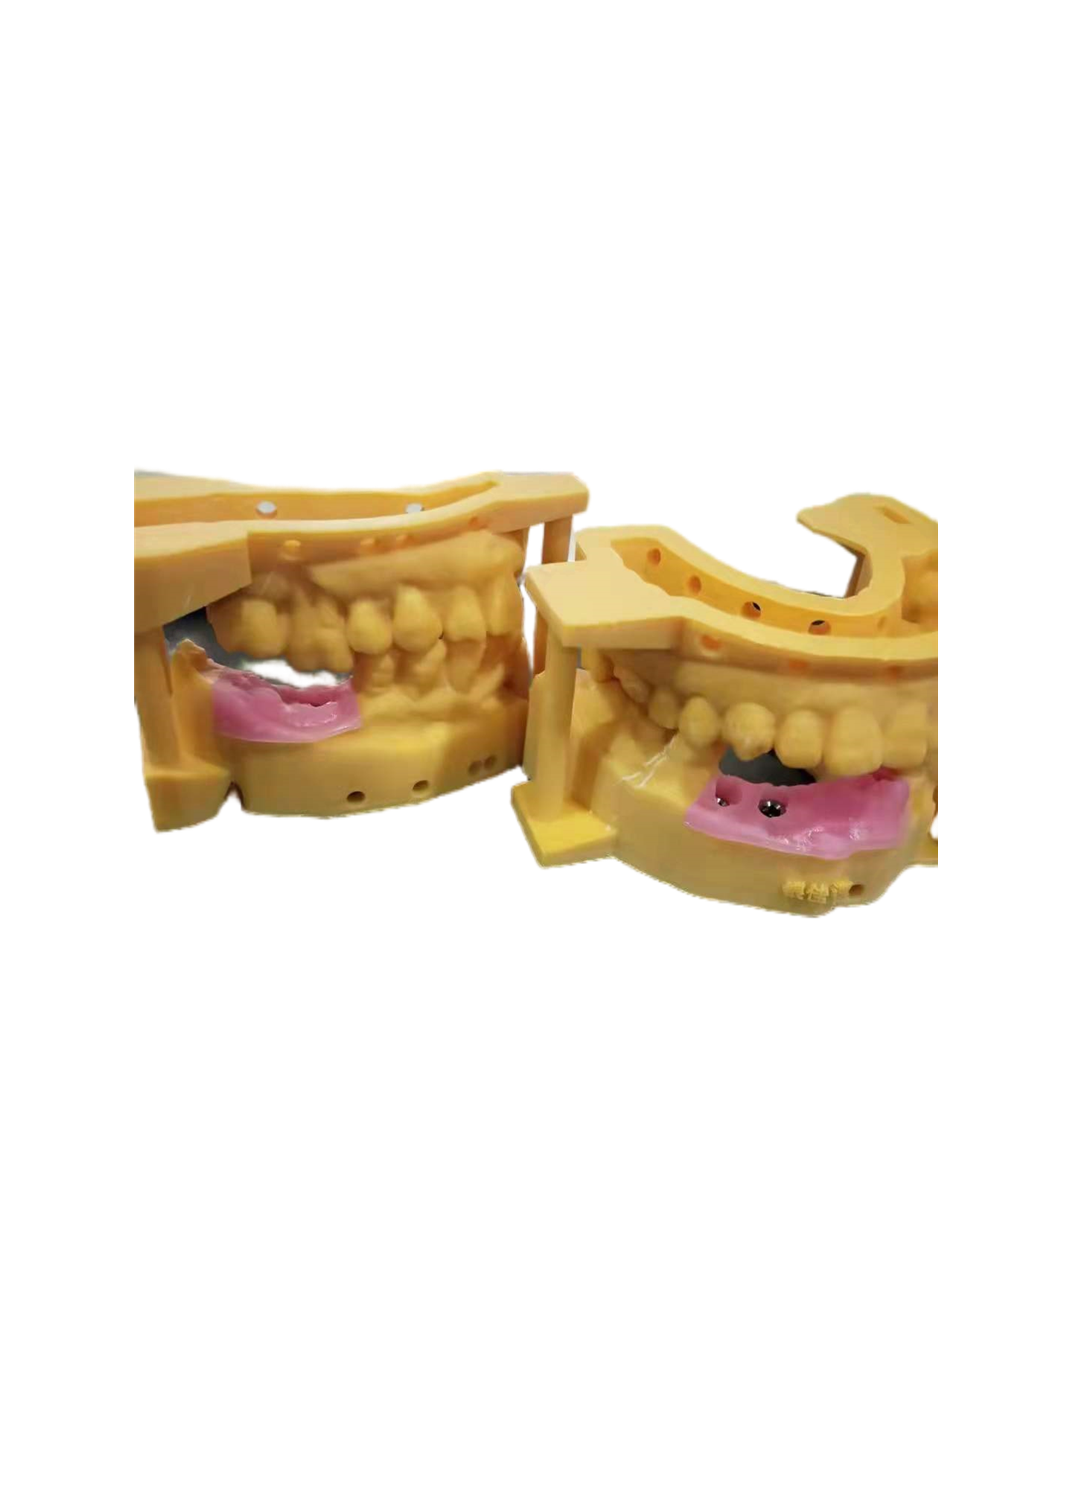 仿真牙龈、人工牙龈光敏树脂液3D打印专用